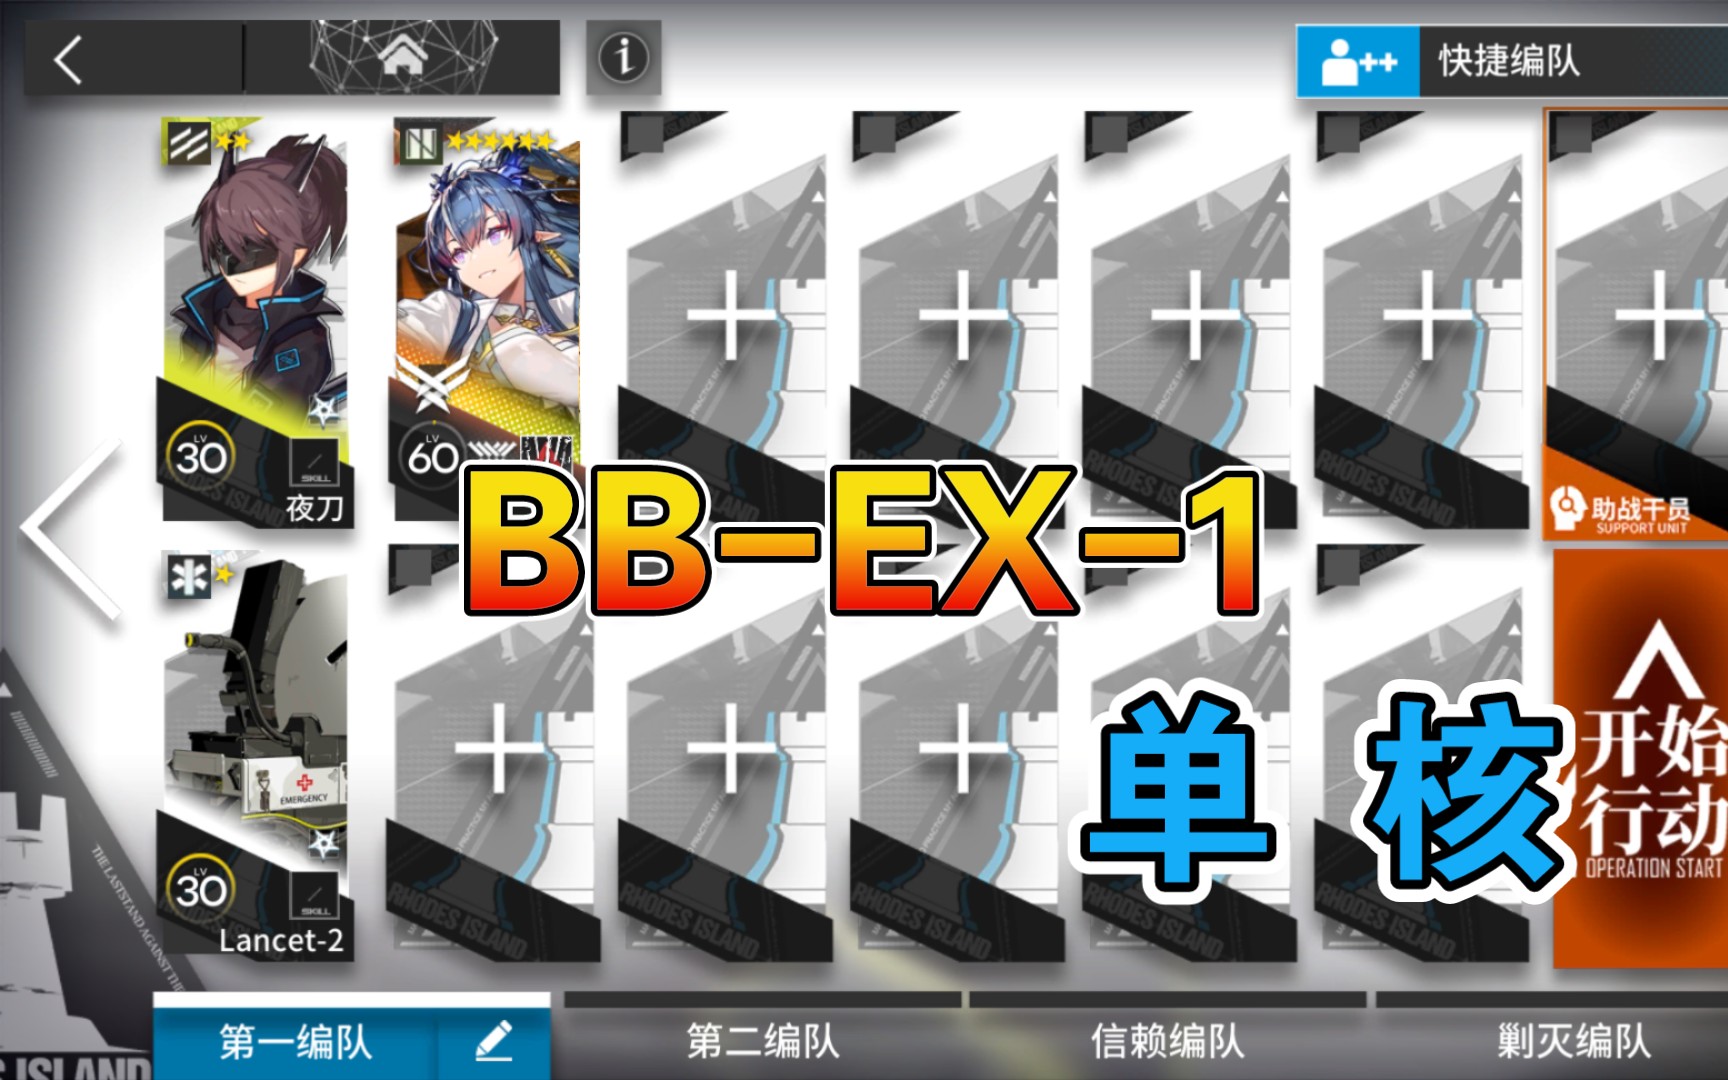 【明日方舟】 BB-EX-1 低配 单核令 巴别塔